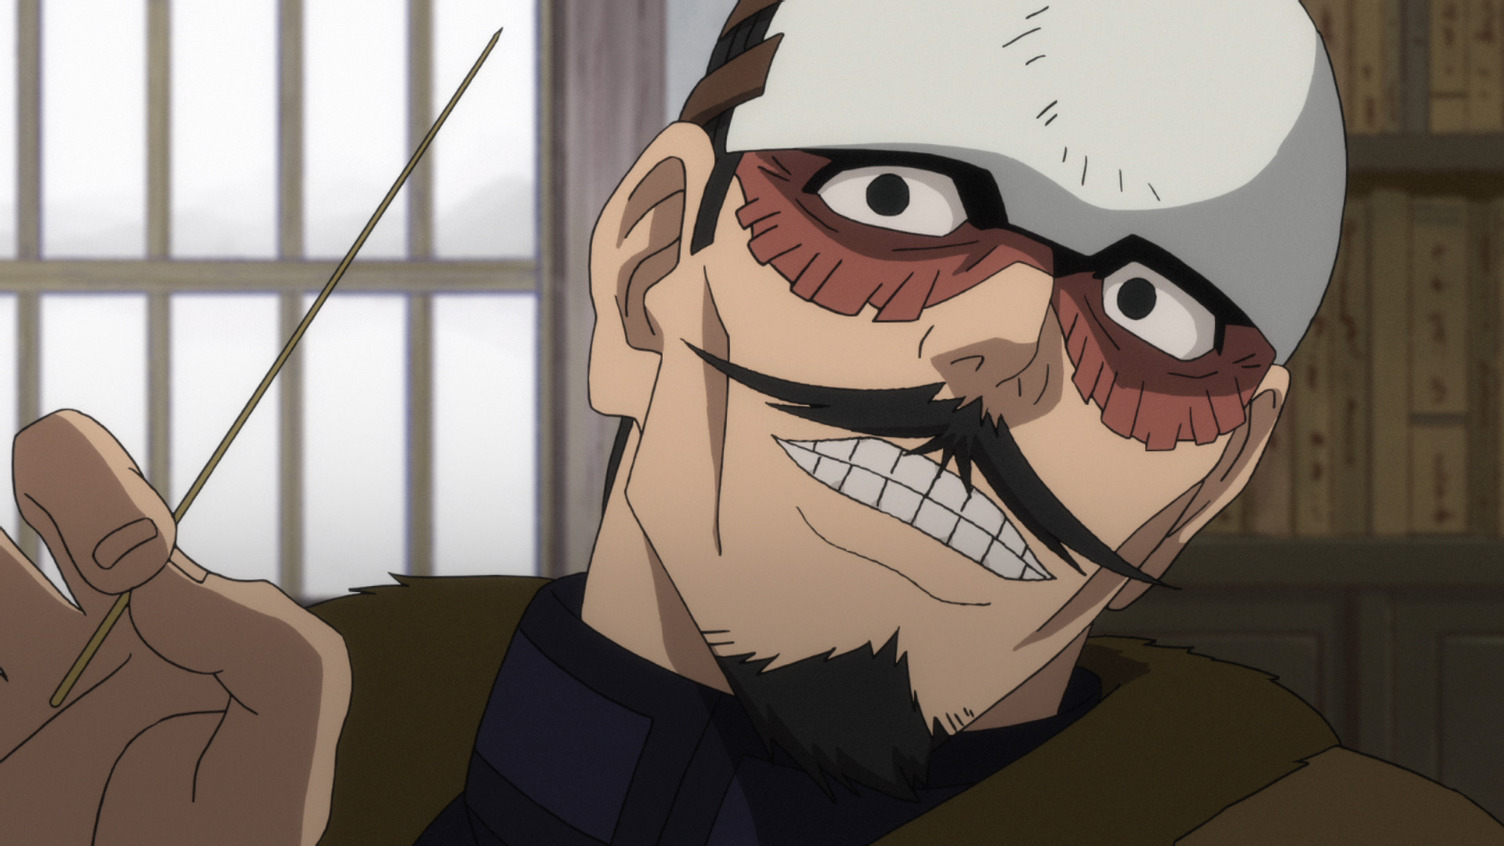 Lt. Tsurumi lächelt bedrohlich, während er in einer Szene aus dem TV-Anime Golden Kamuy einen hölzernen Dango-Spieß schwingt.